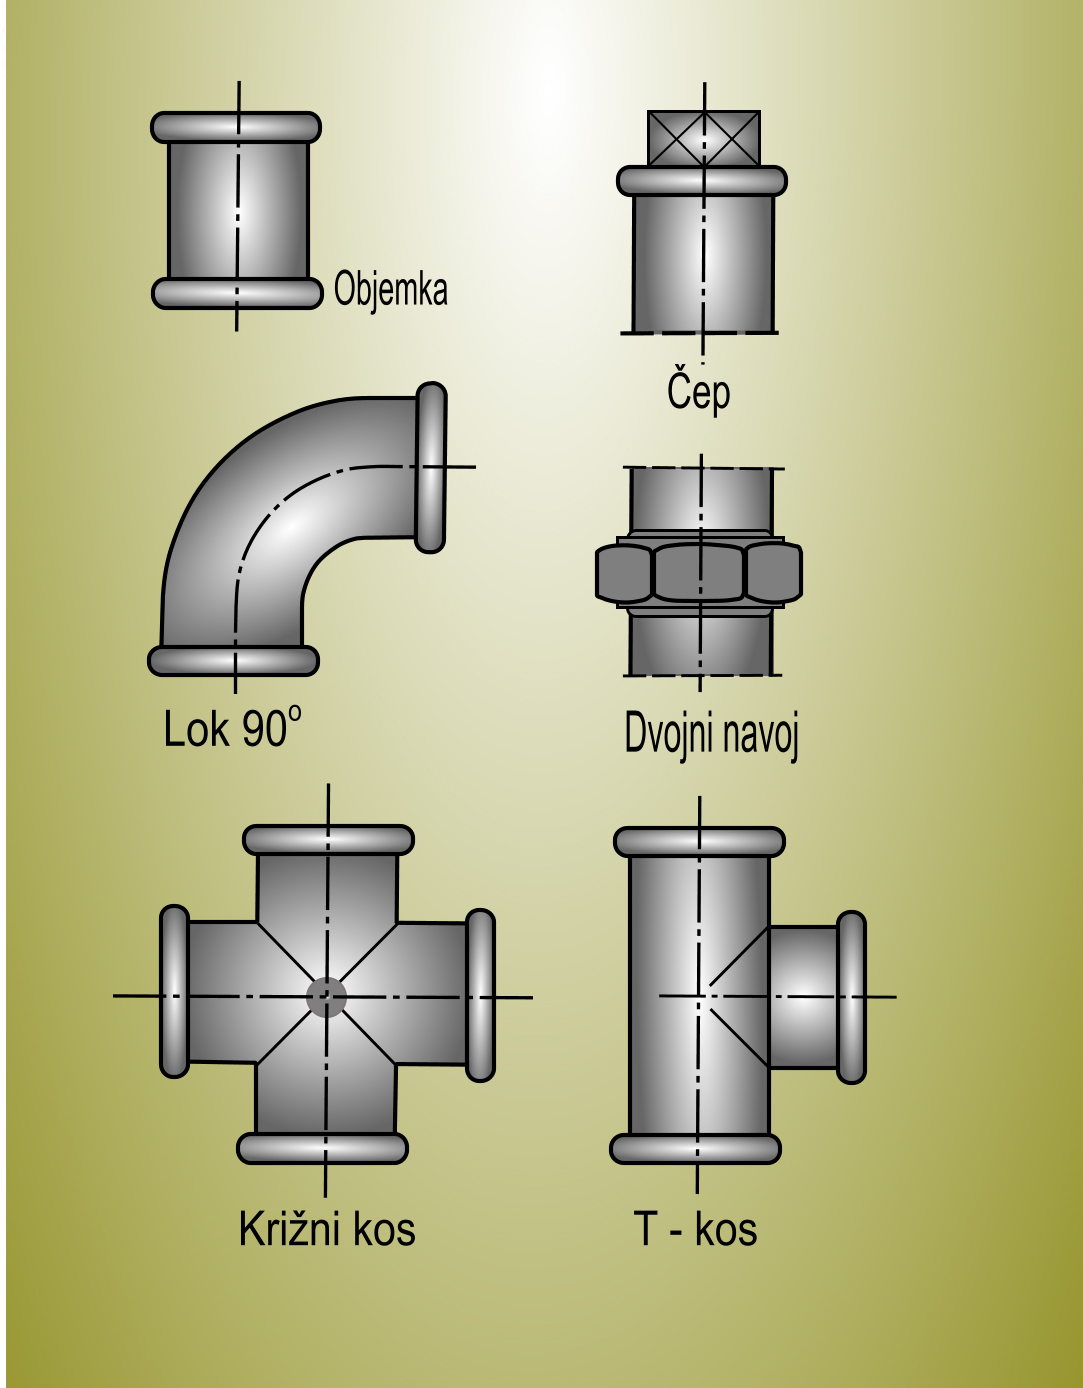 Dimenzije in oprema za vgradnjo plinskih cevi 